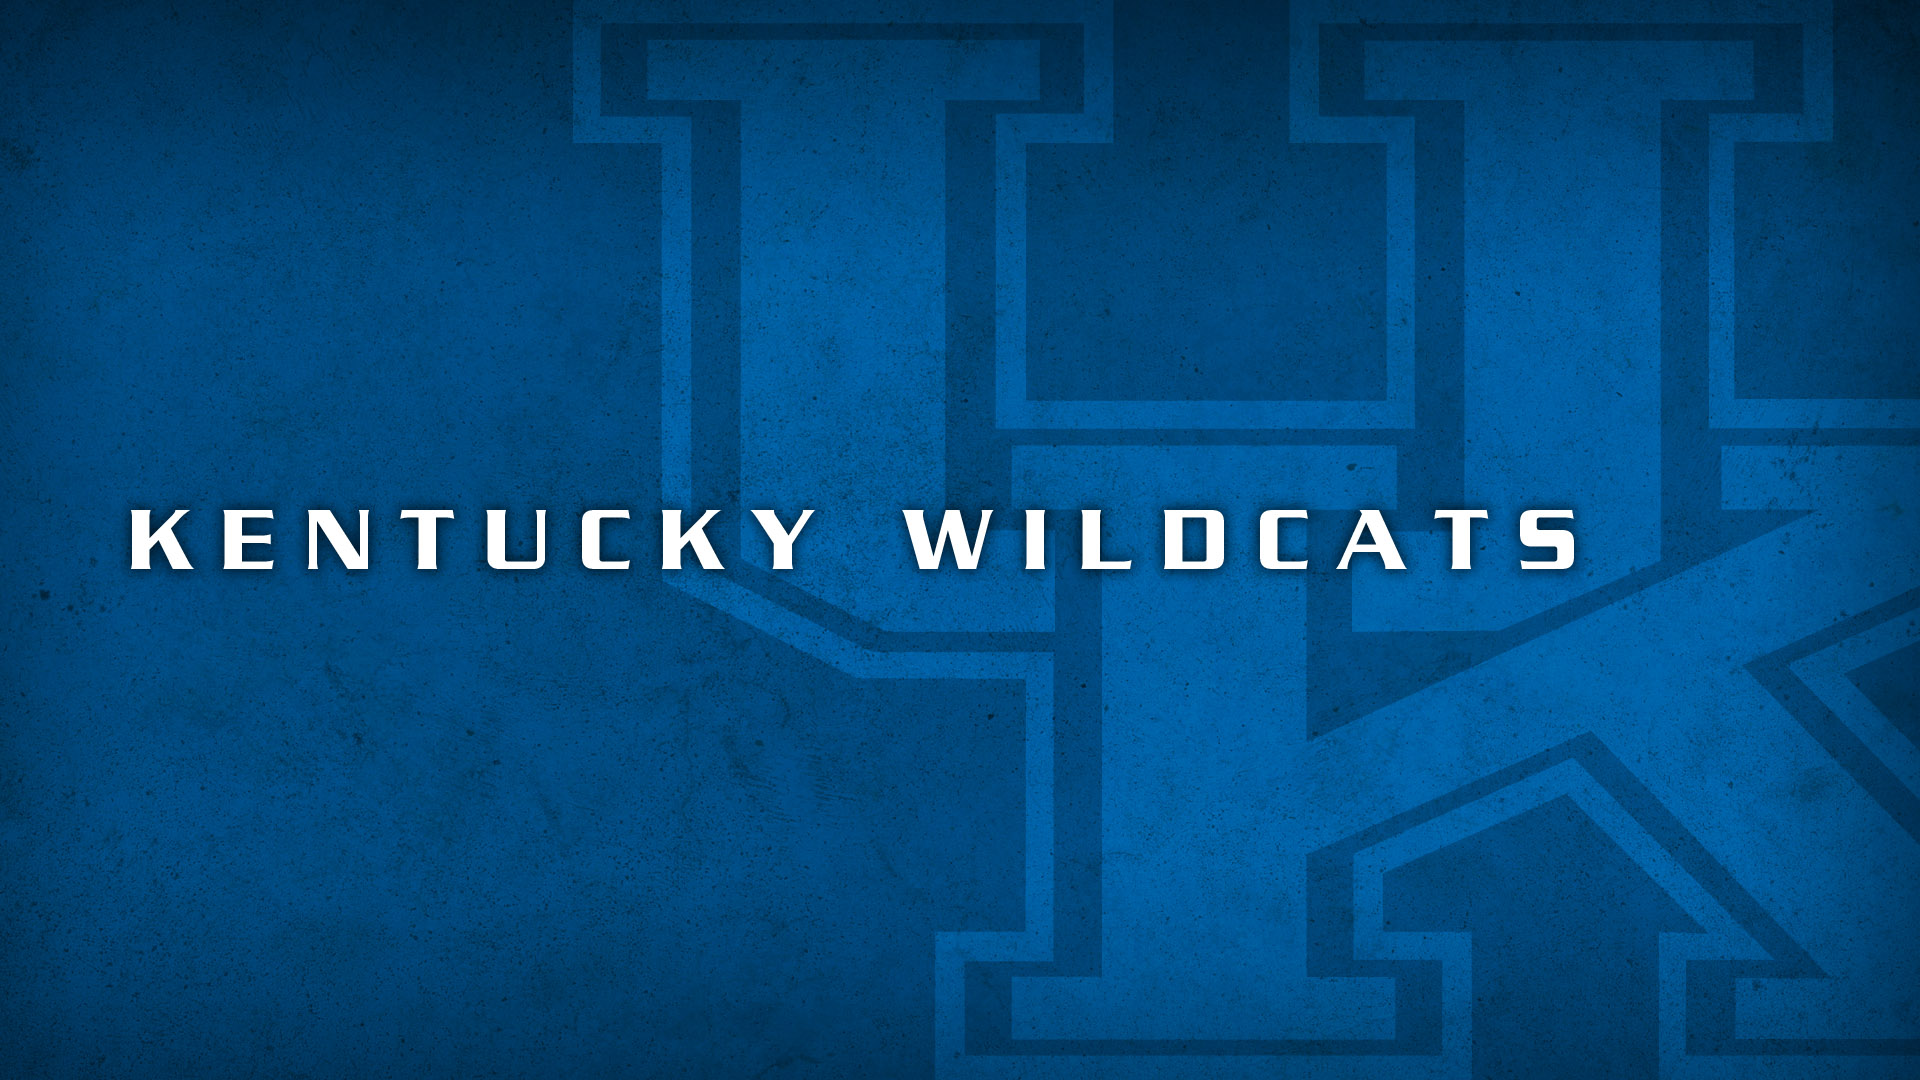 Bộ sưu tập hình nền bóng rổ đội Kentucky Wildcats miễn phí sẽ khiến bạn bất ngờ bởi độ đẹp của những hình ảnh này. Hãy nhanh tay tải về để thay đổi hình nền cho thiết bị của mình.